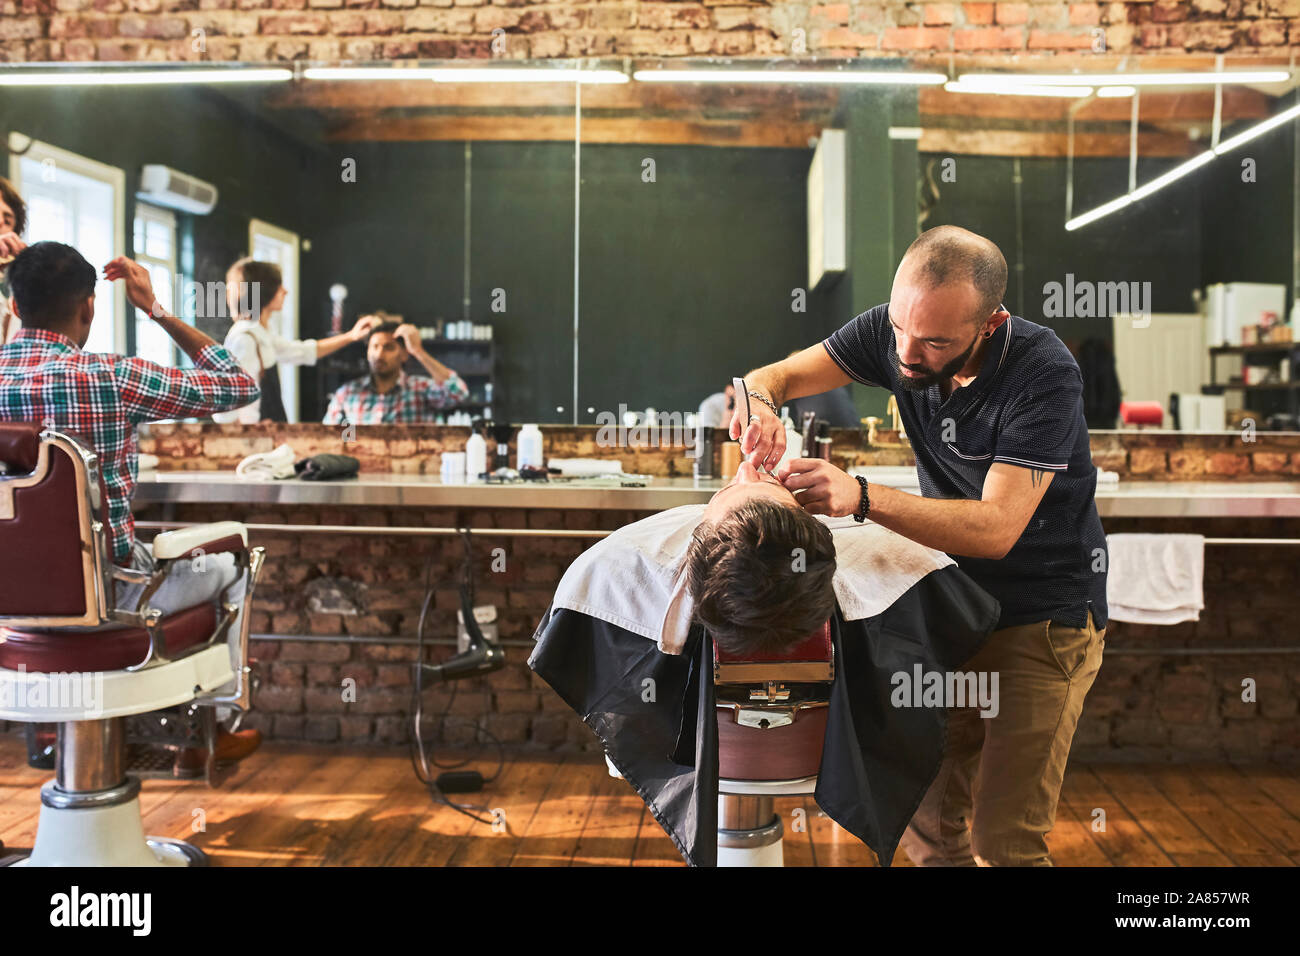 Coiffure homme visage rasage de client dans un salon de barbier Banque D'Images